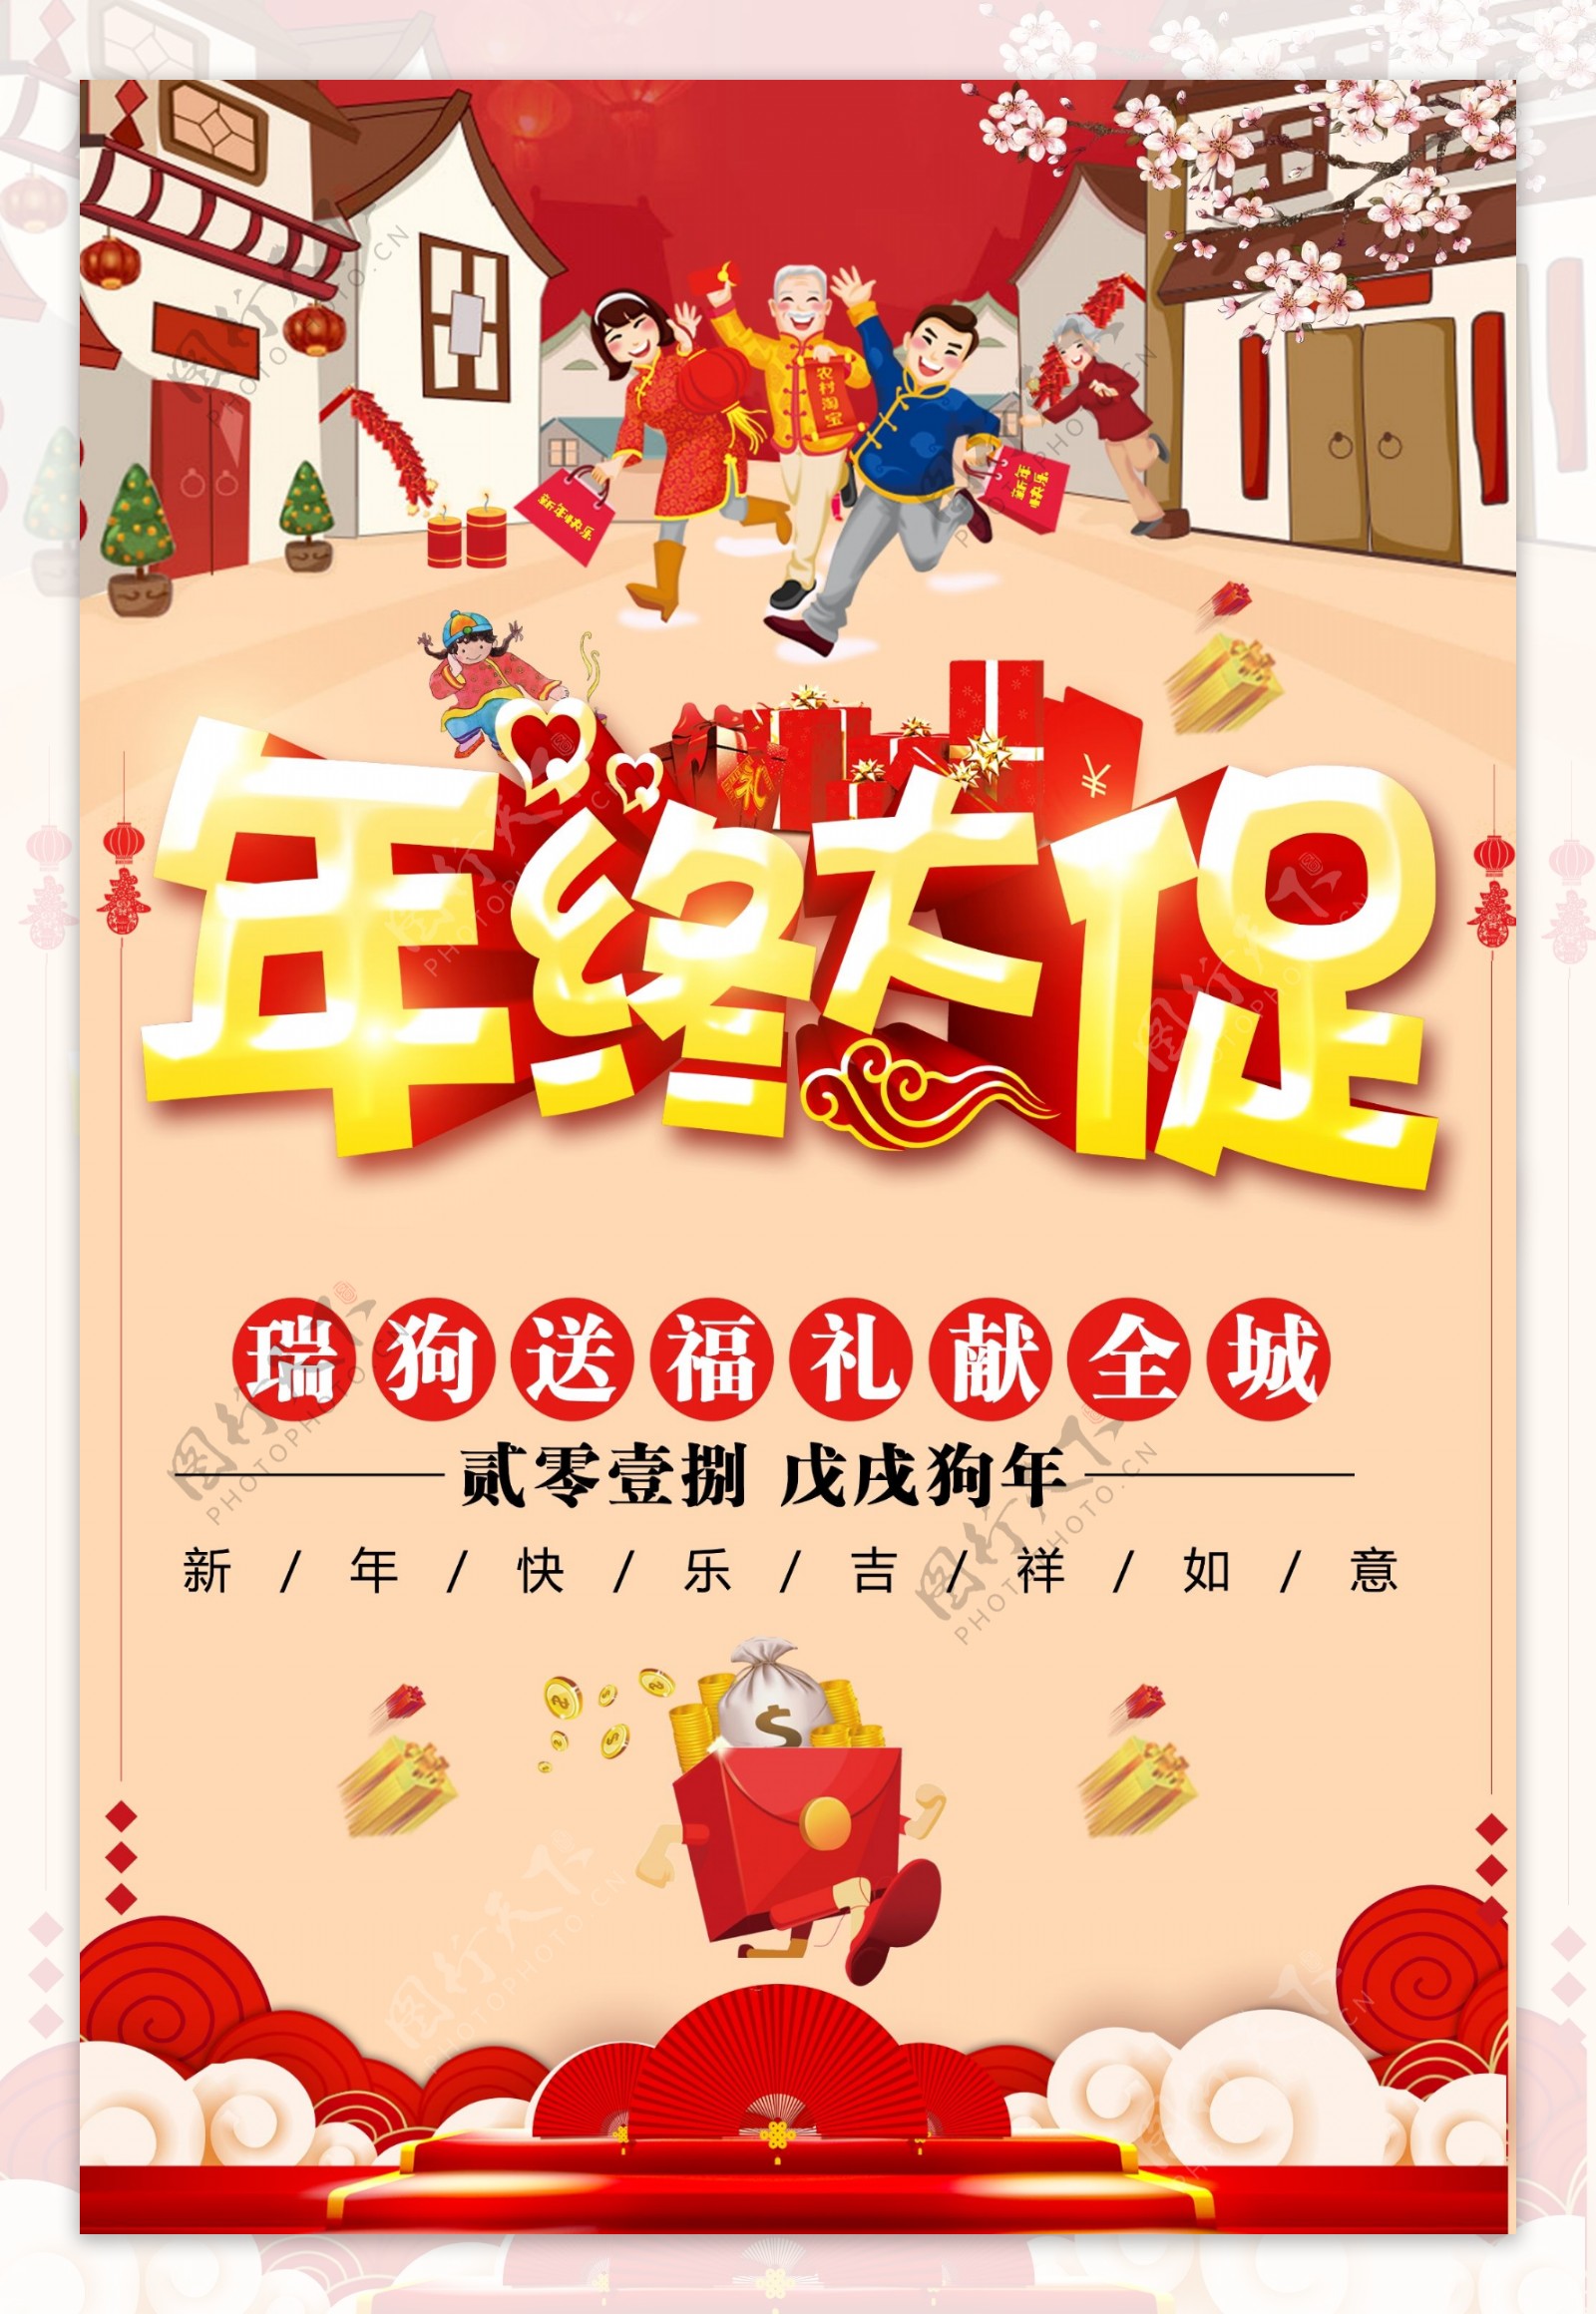 中国风年终大促年货节海报设计